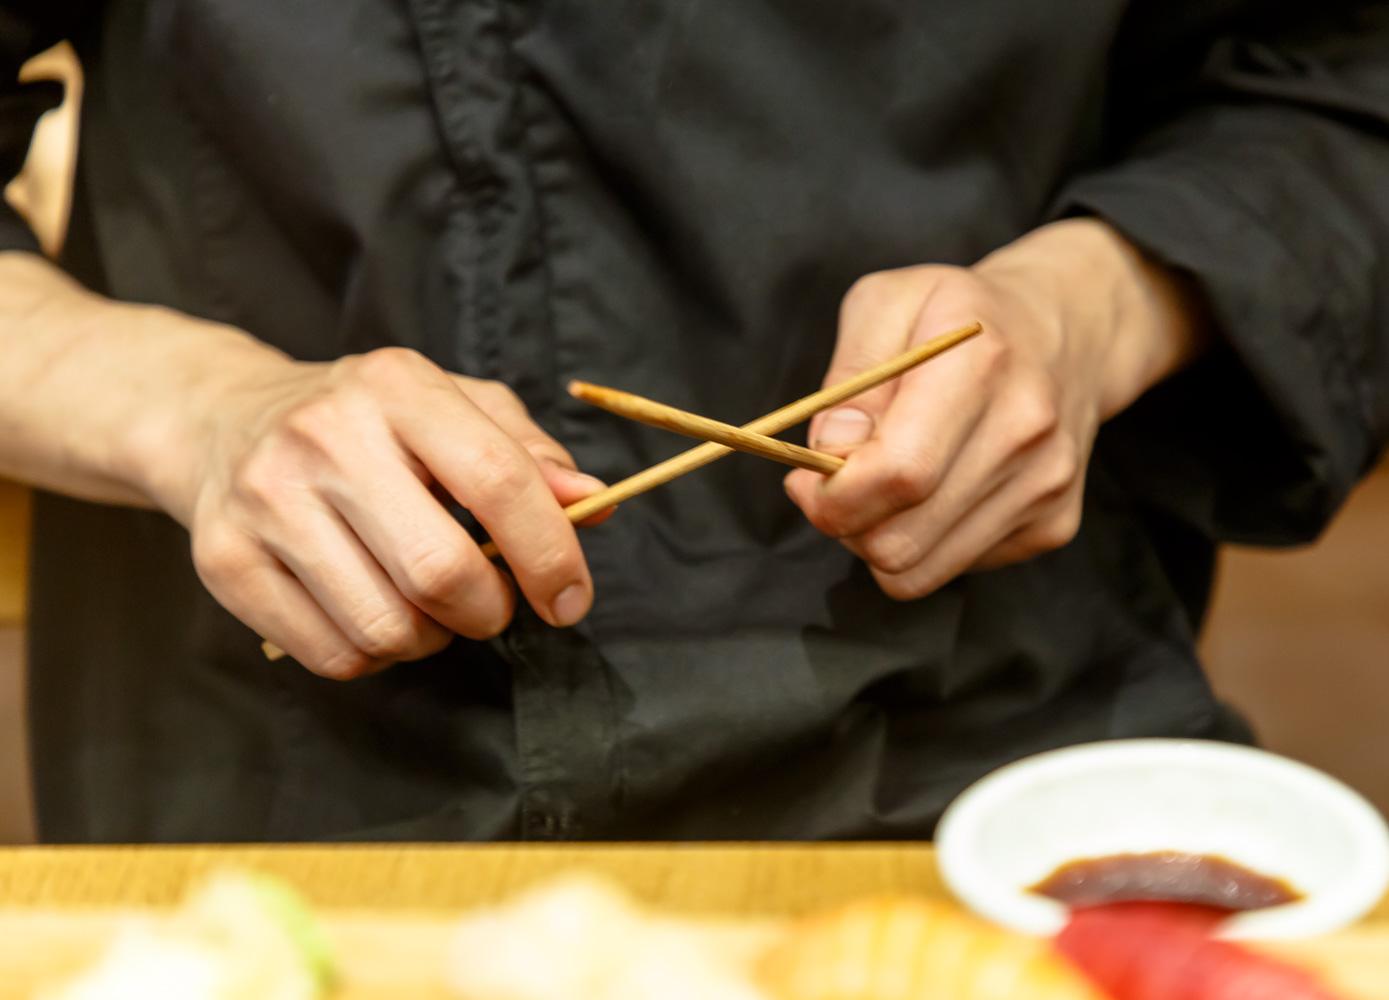 Ссылка дня: вредят ли экологии палочки для суши